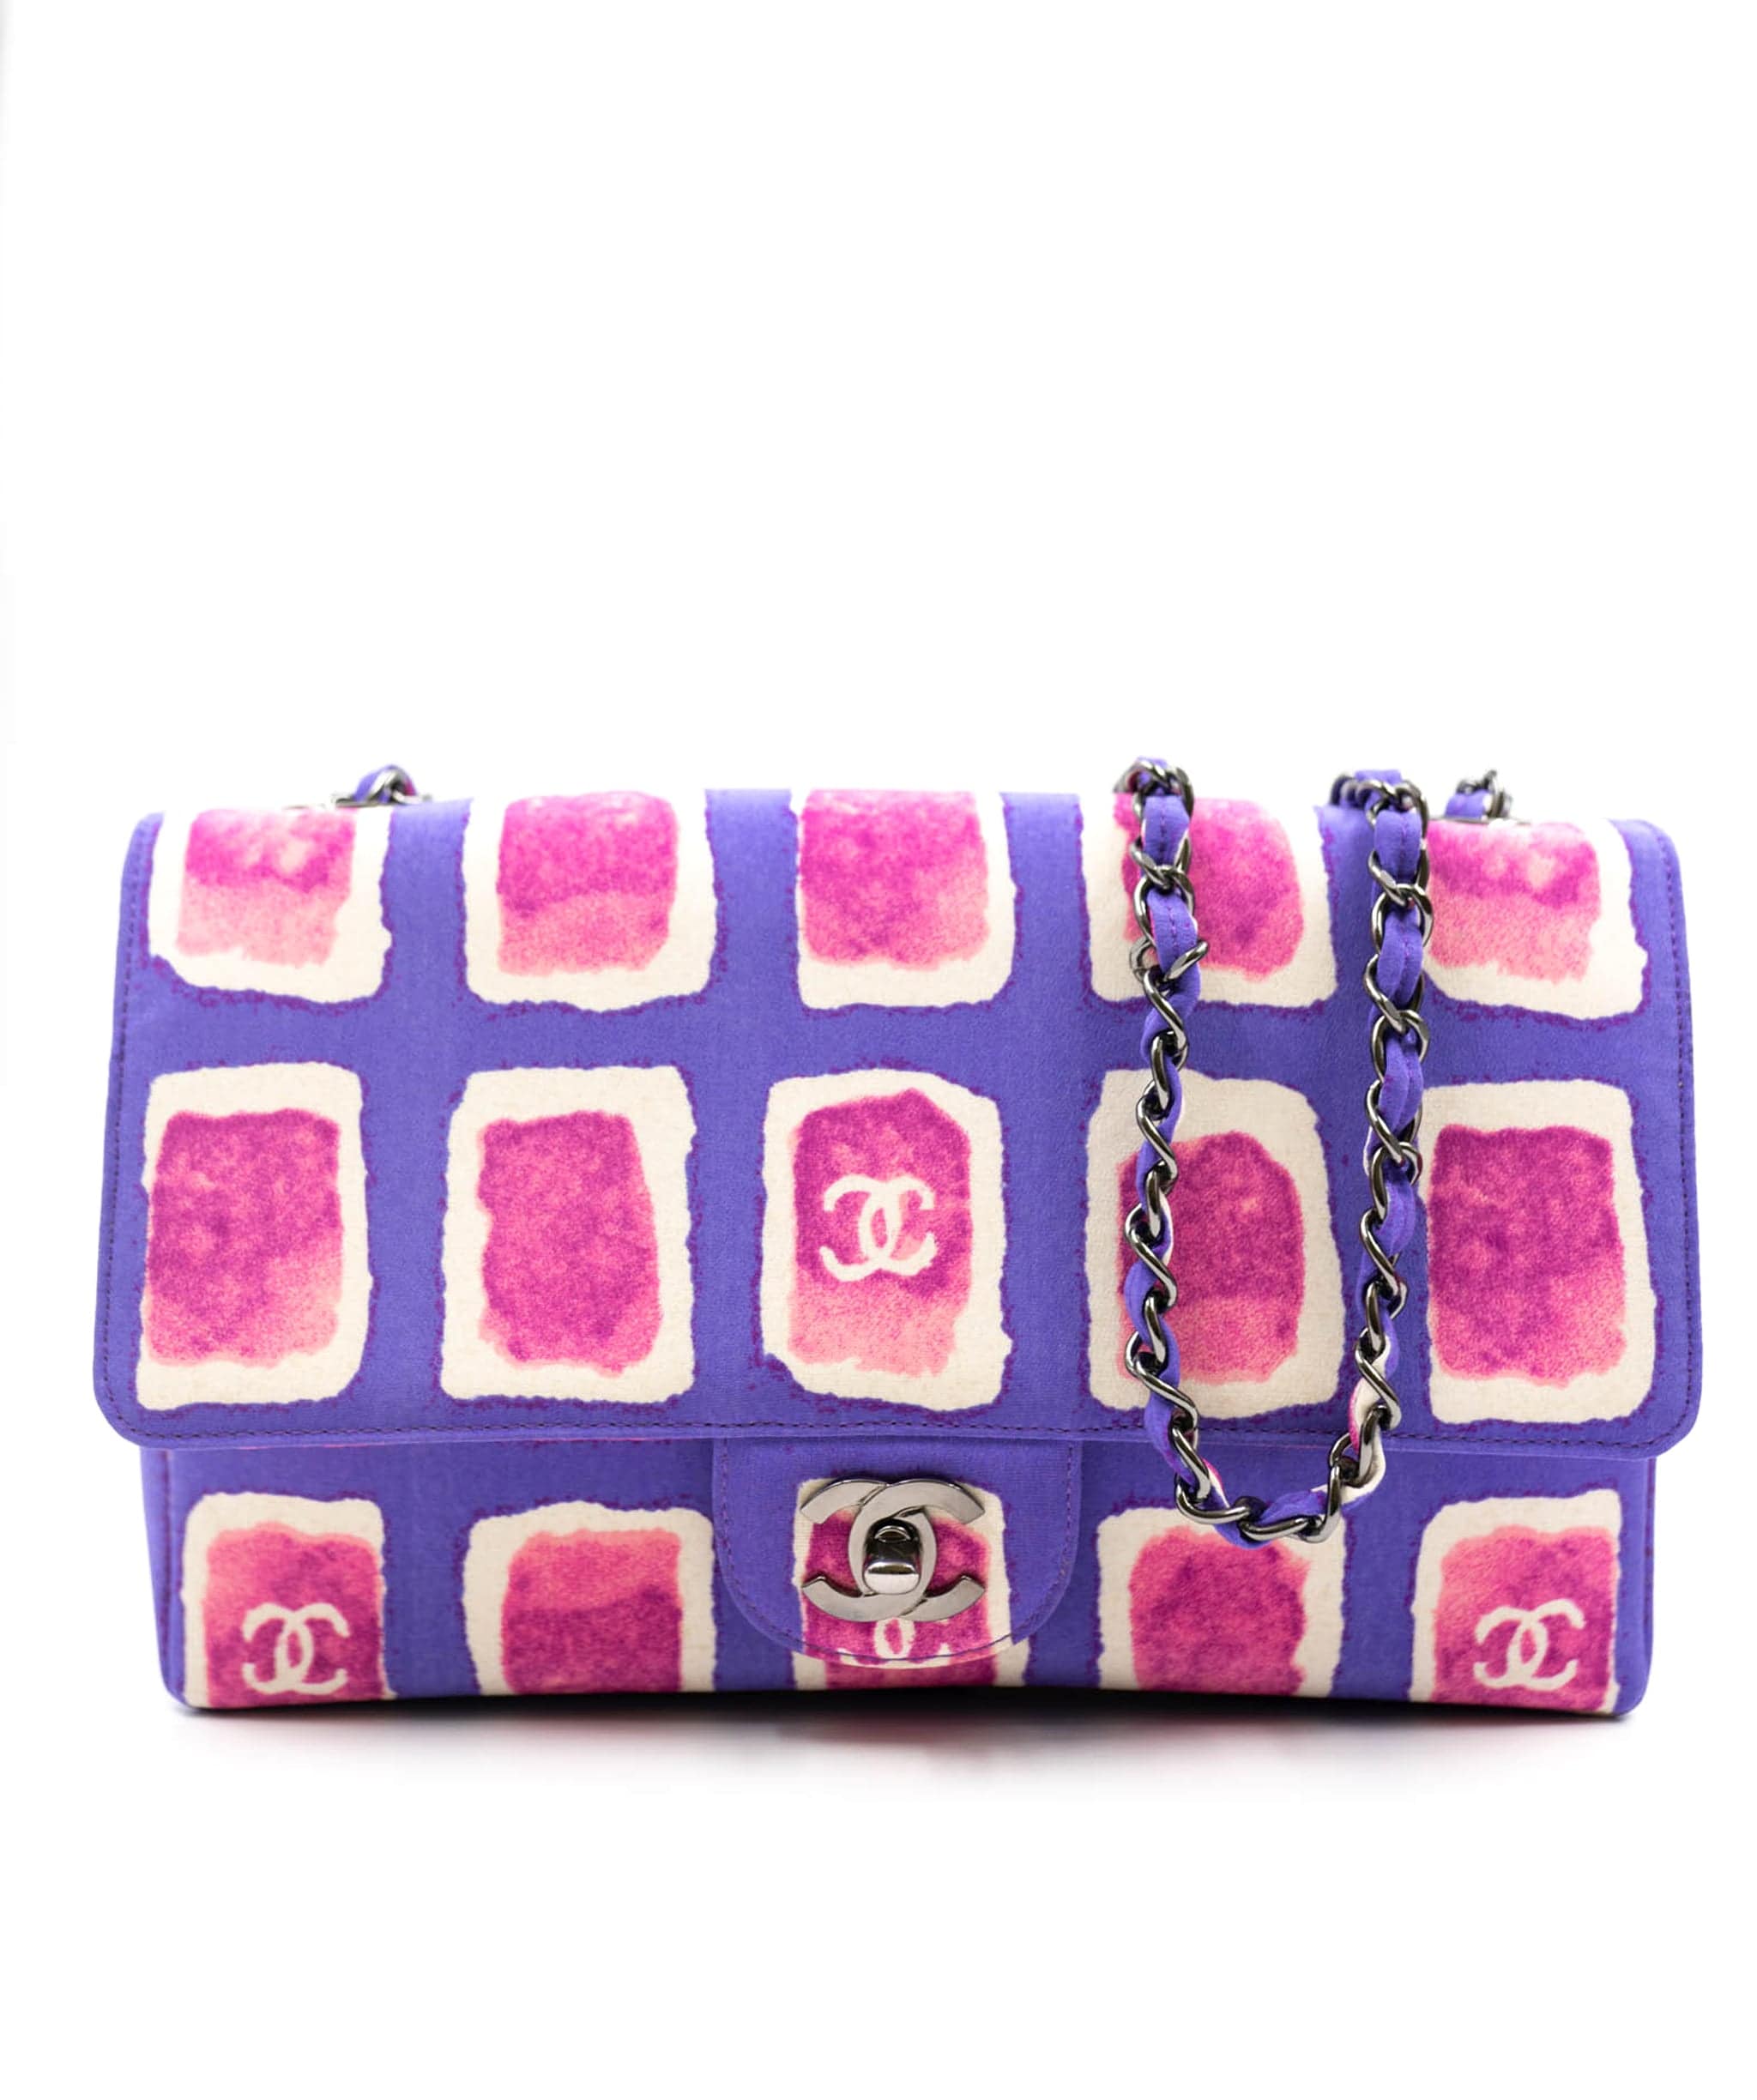 Chanel Chanel vintage purple pink cc print medium flap shoulder bag UKL1164